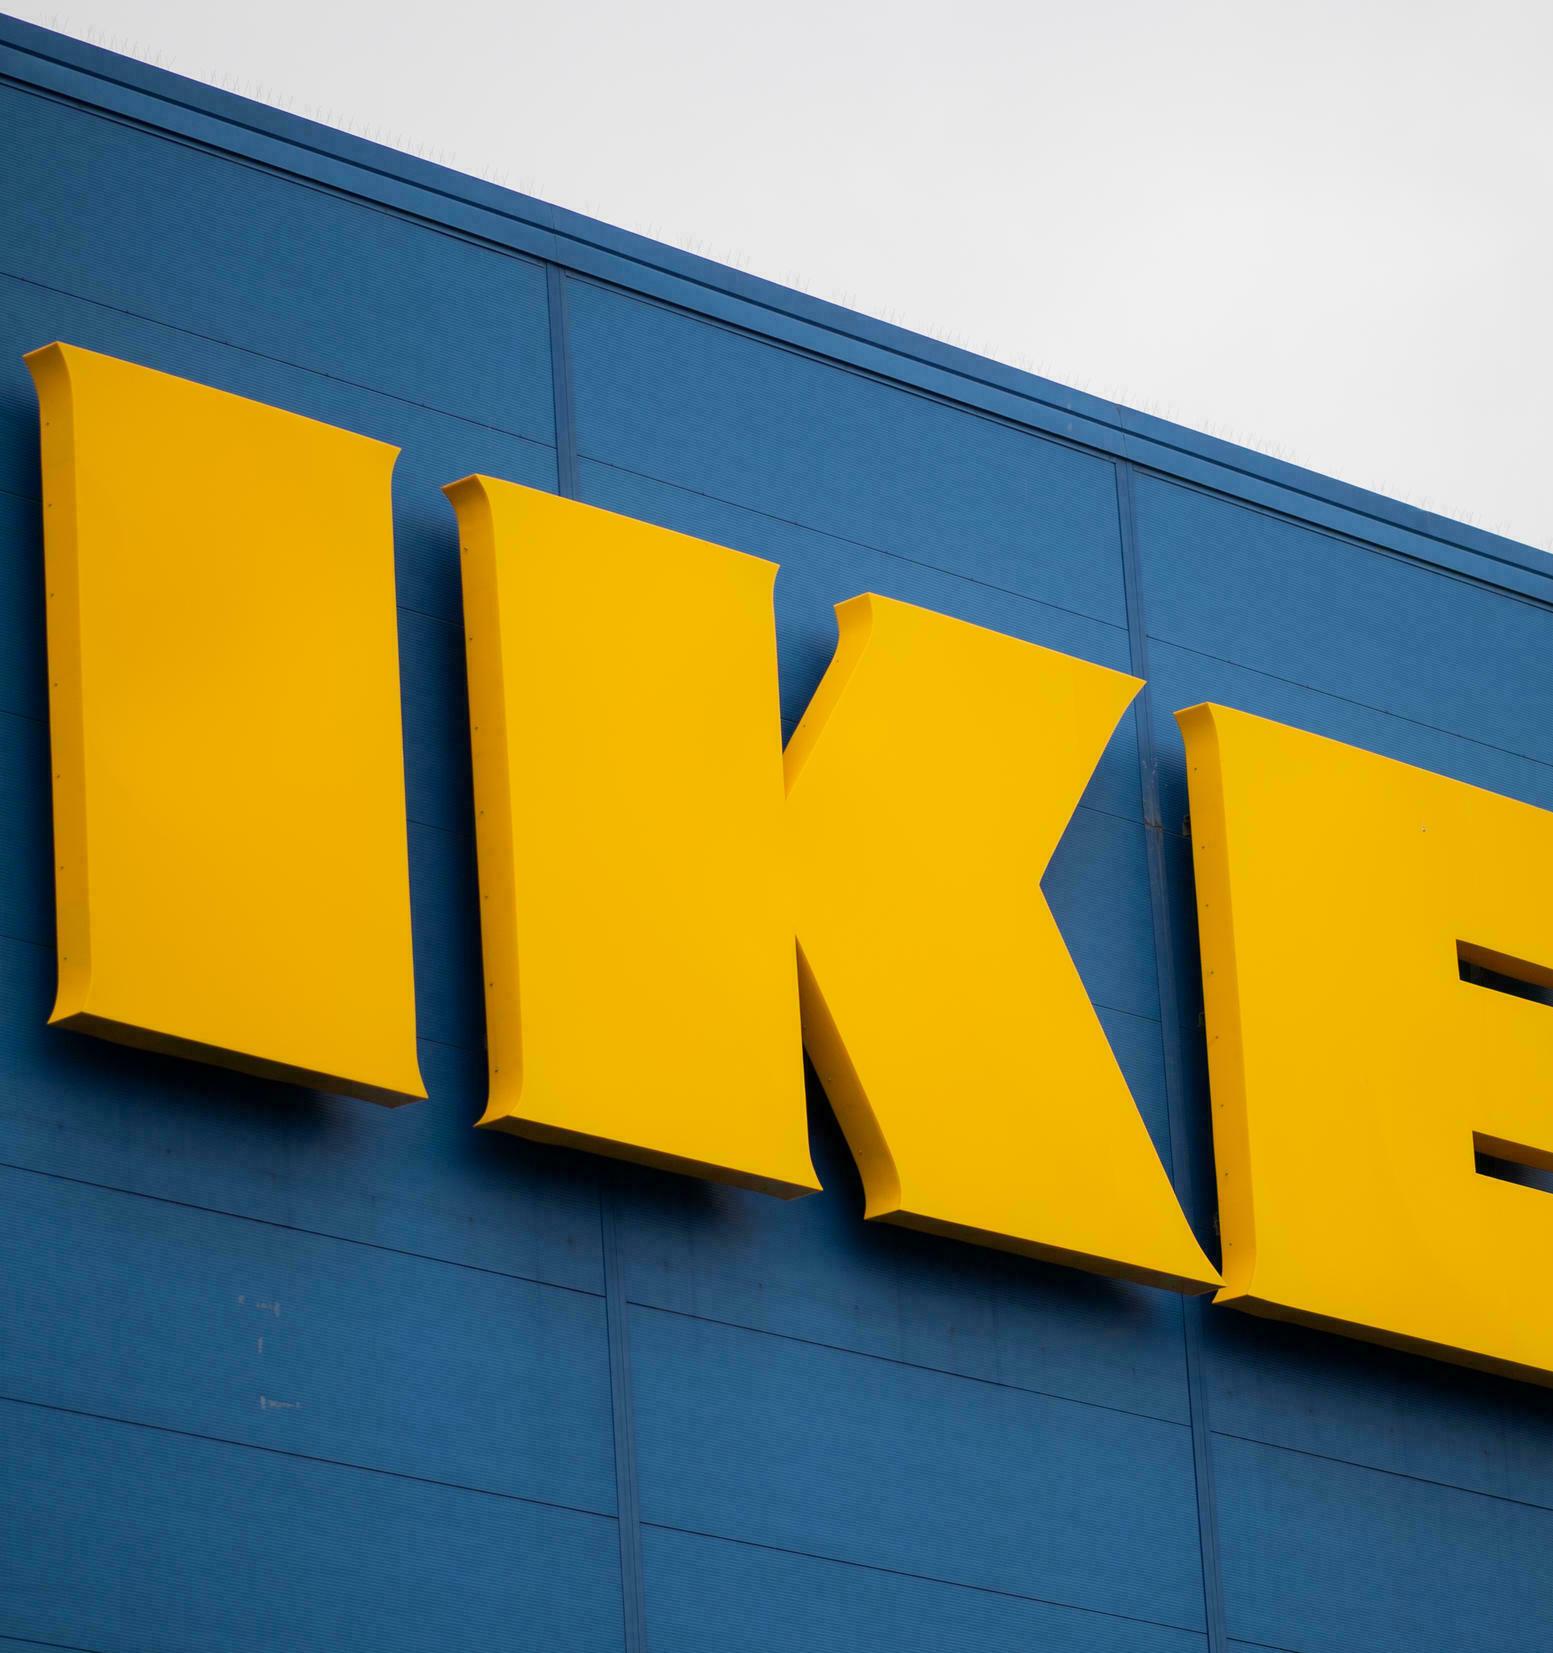 IKEA планирует перенести производство из Восточной Азии в Турцию